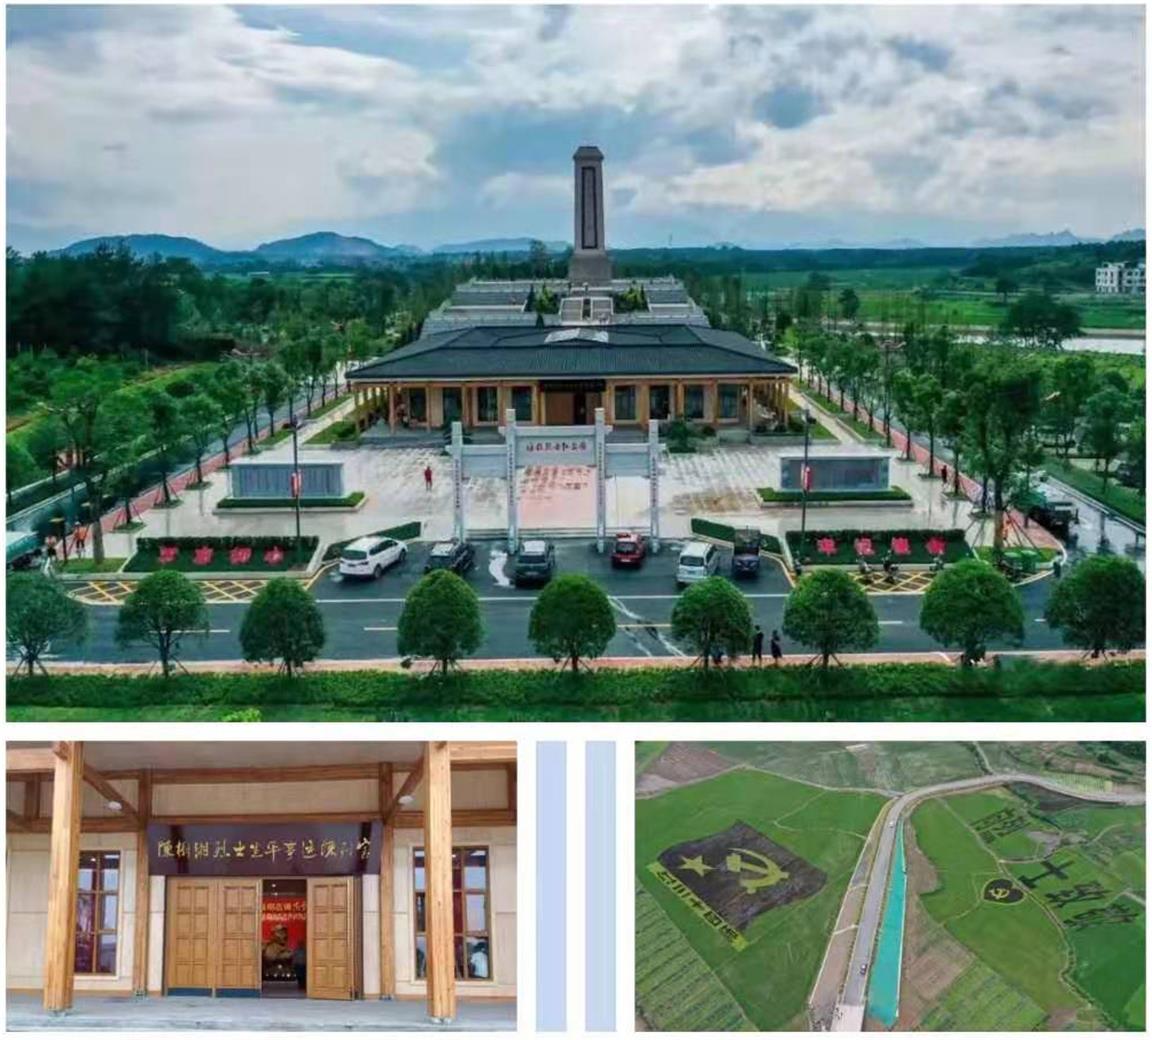 陈树湘烈士纪念园位于道县梅花镇贵头村,距县城约5公里,占地面积约48